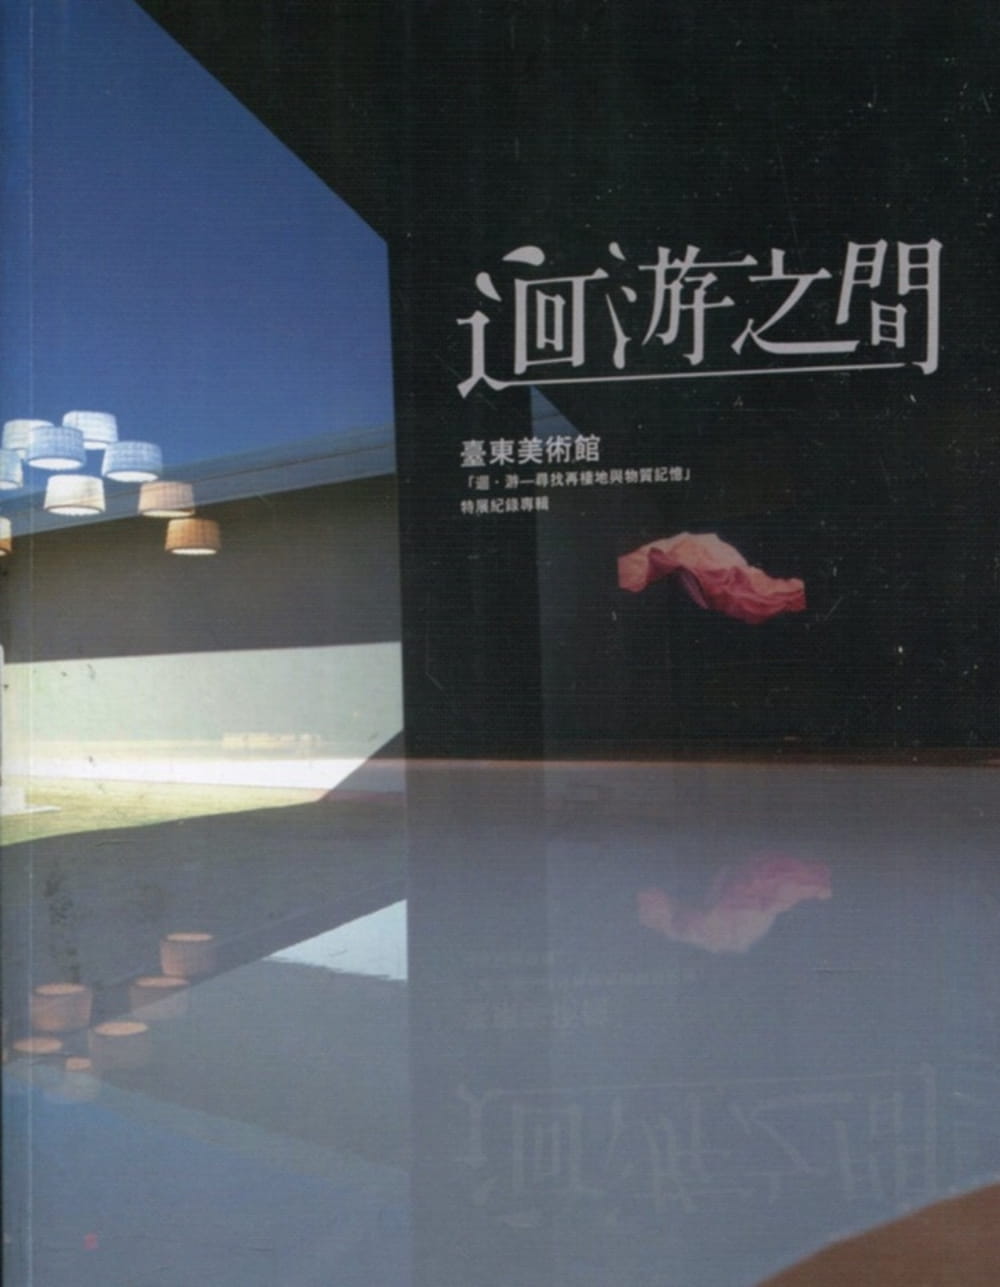 迴游之間：臺東美術館「迴•游-尋找再棲地與物質記憶」特展紀錄專輯